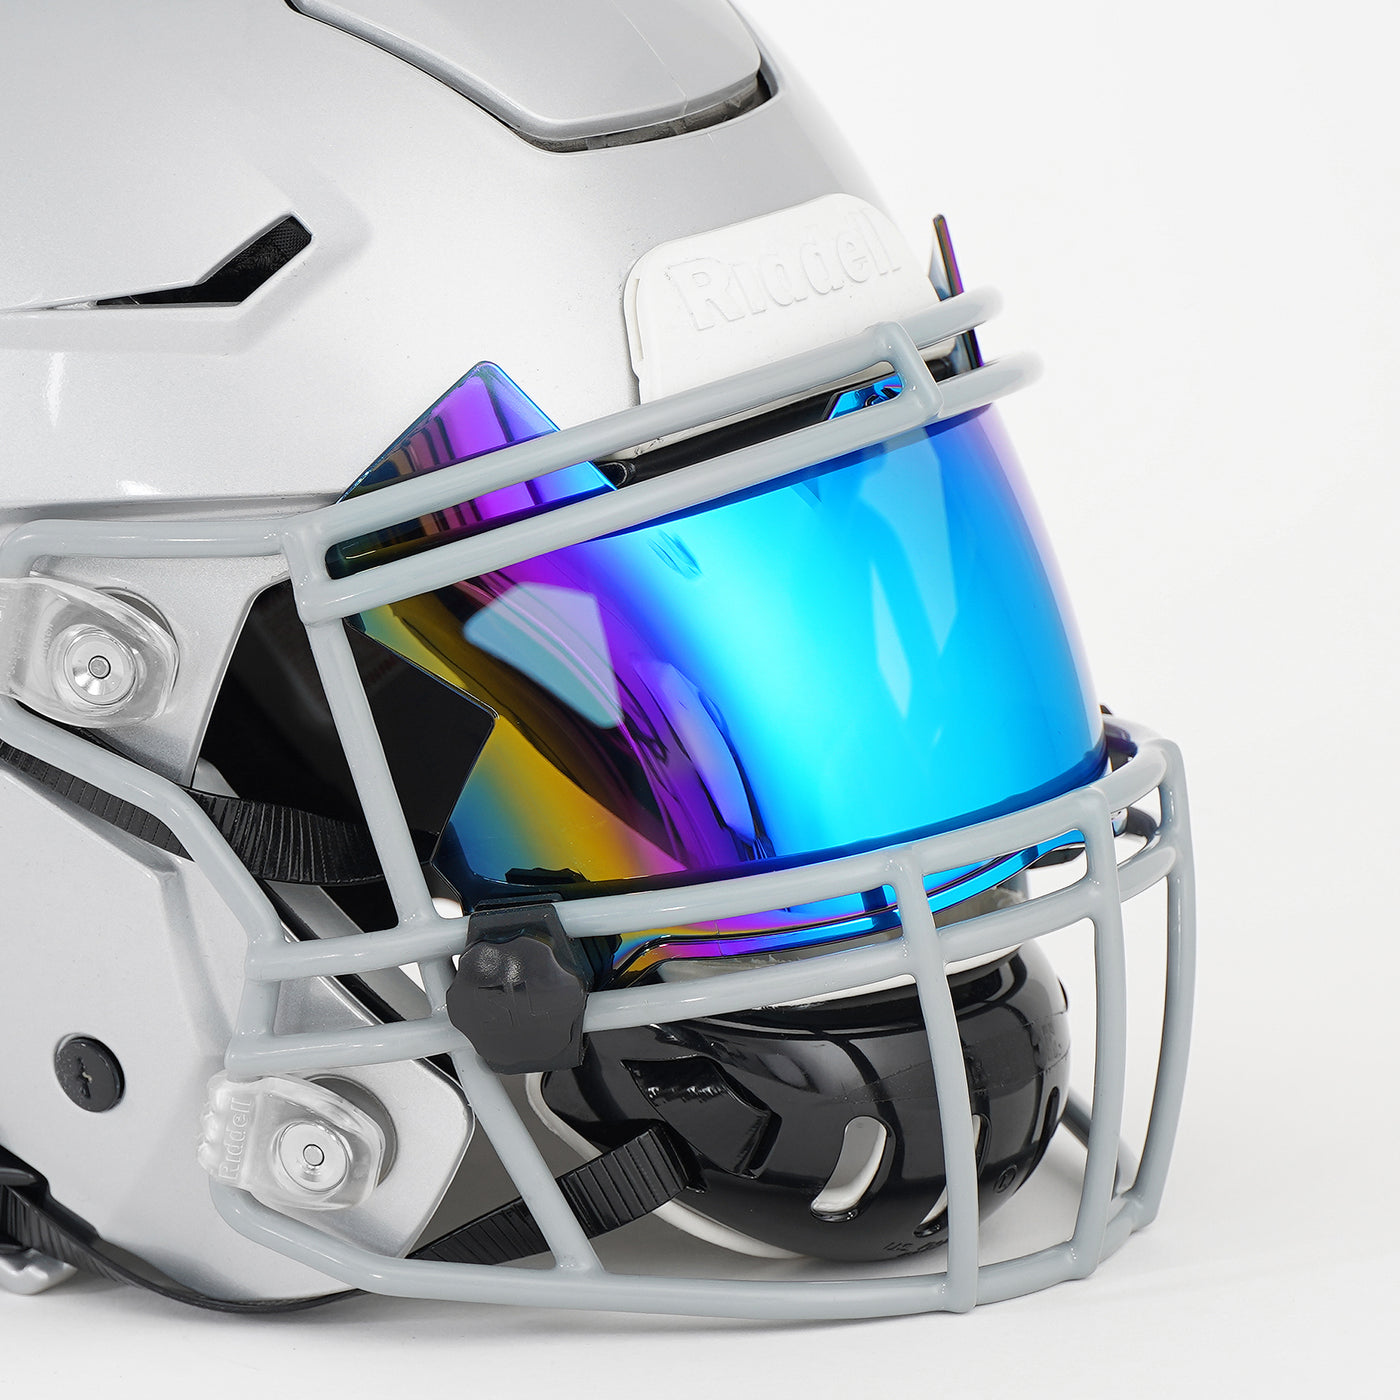 Blue Devil SX2 Helmet Eye-Shield Visor